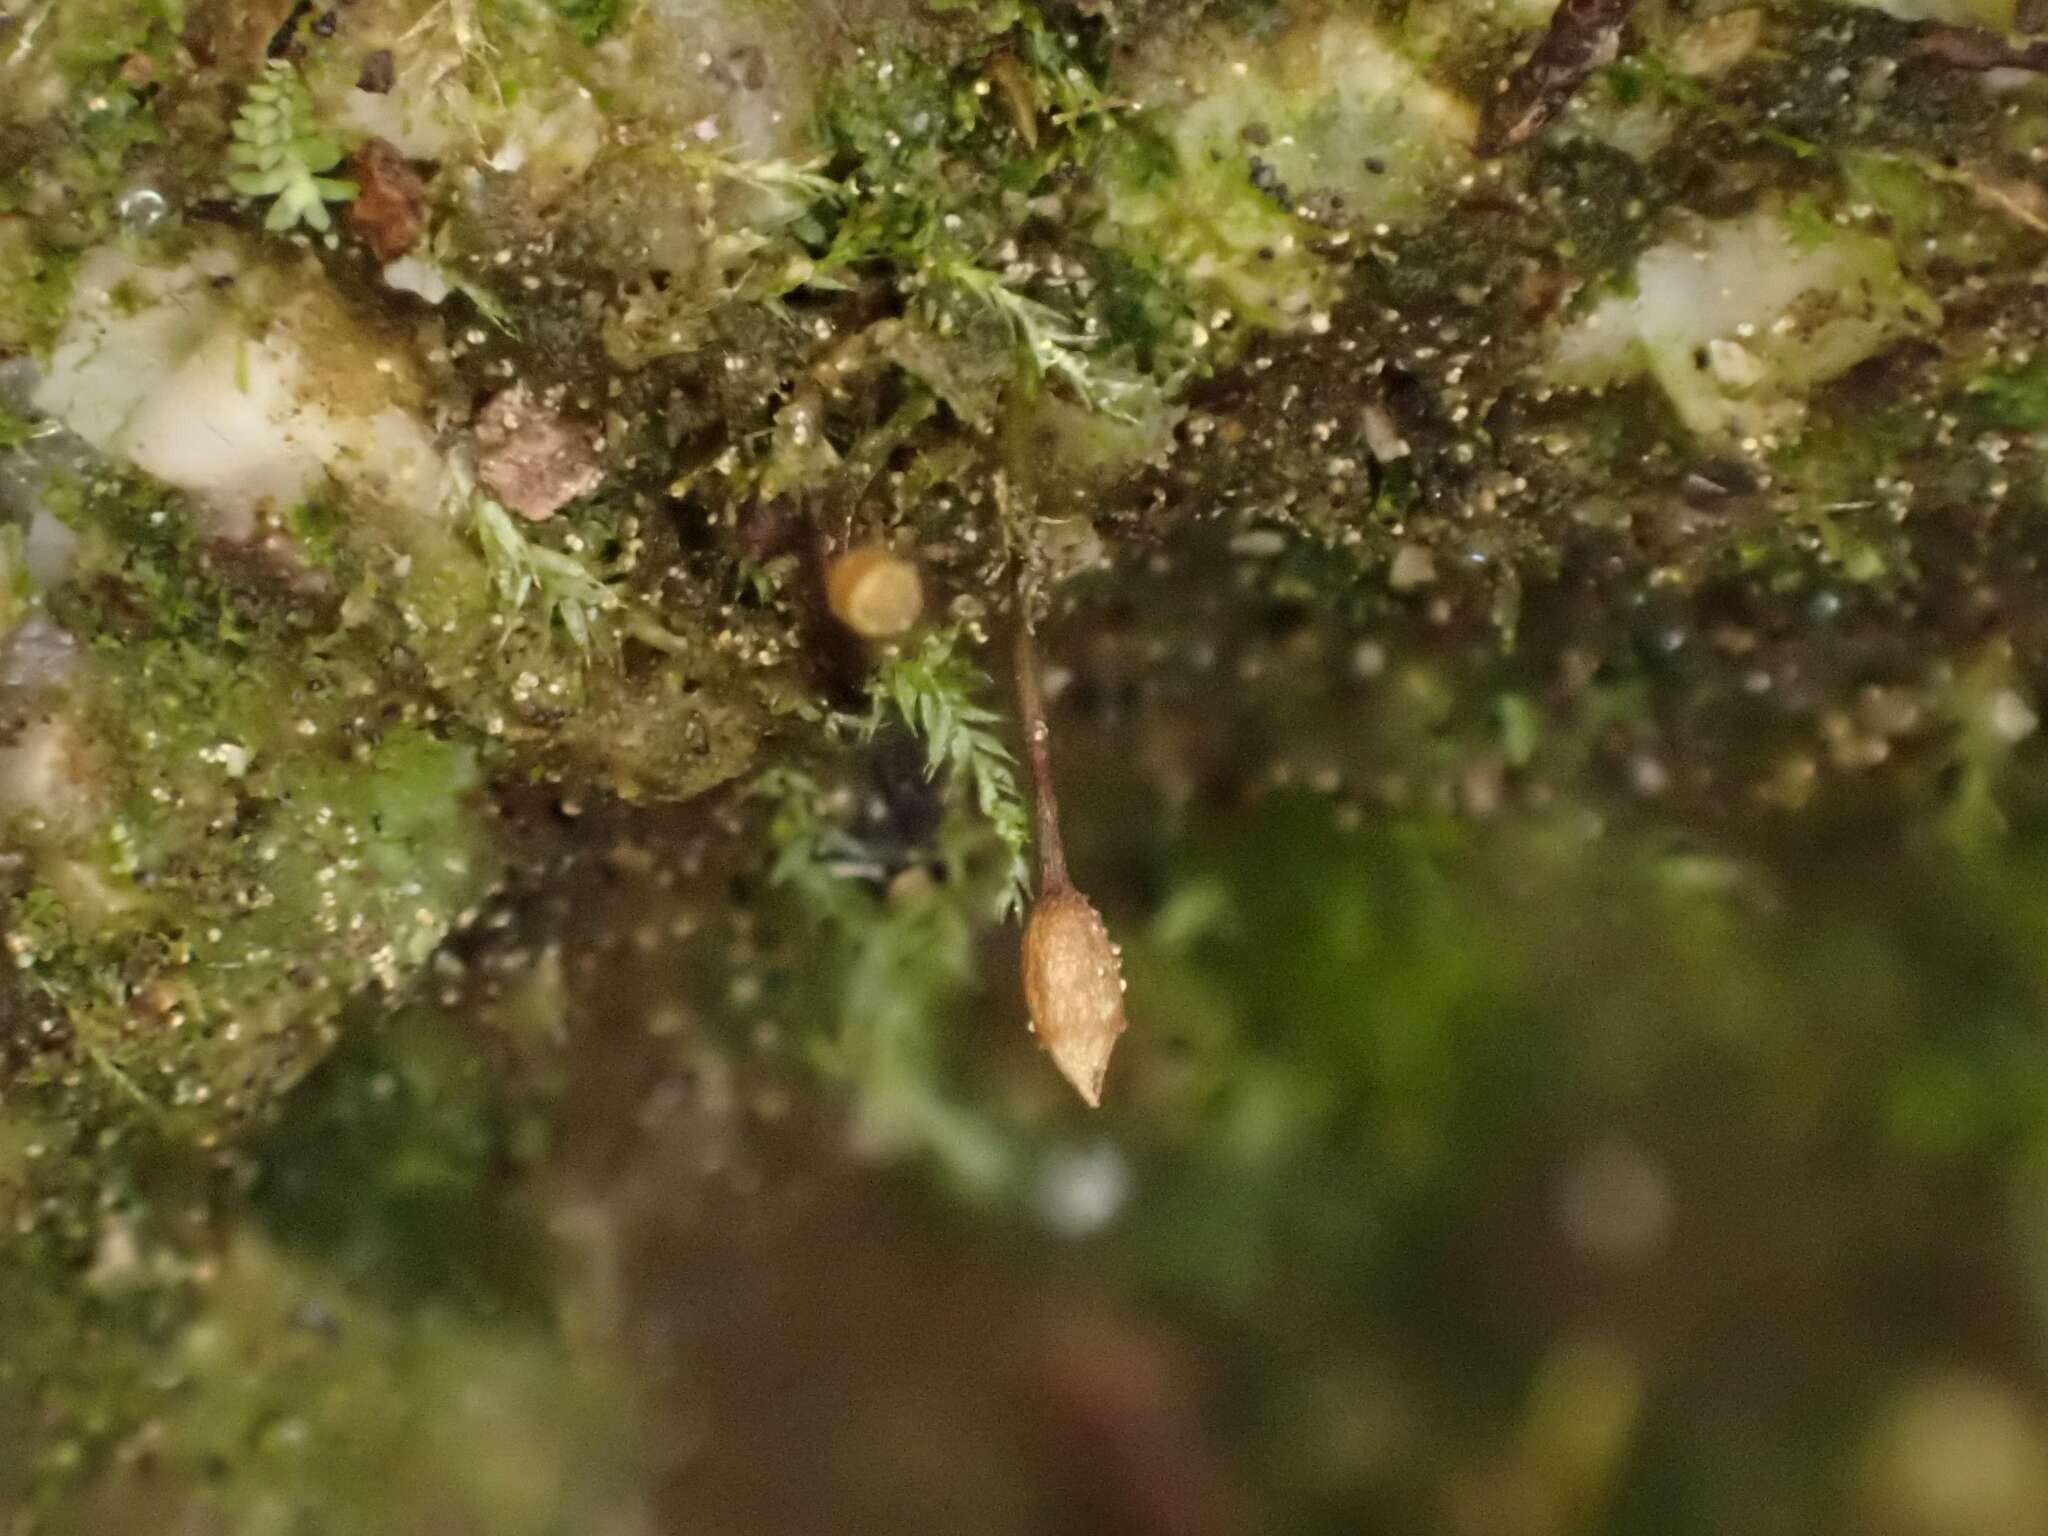 Image of ovate tetrodontium moss